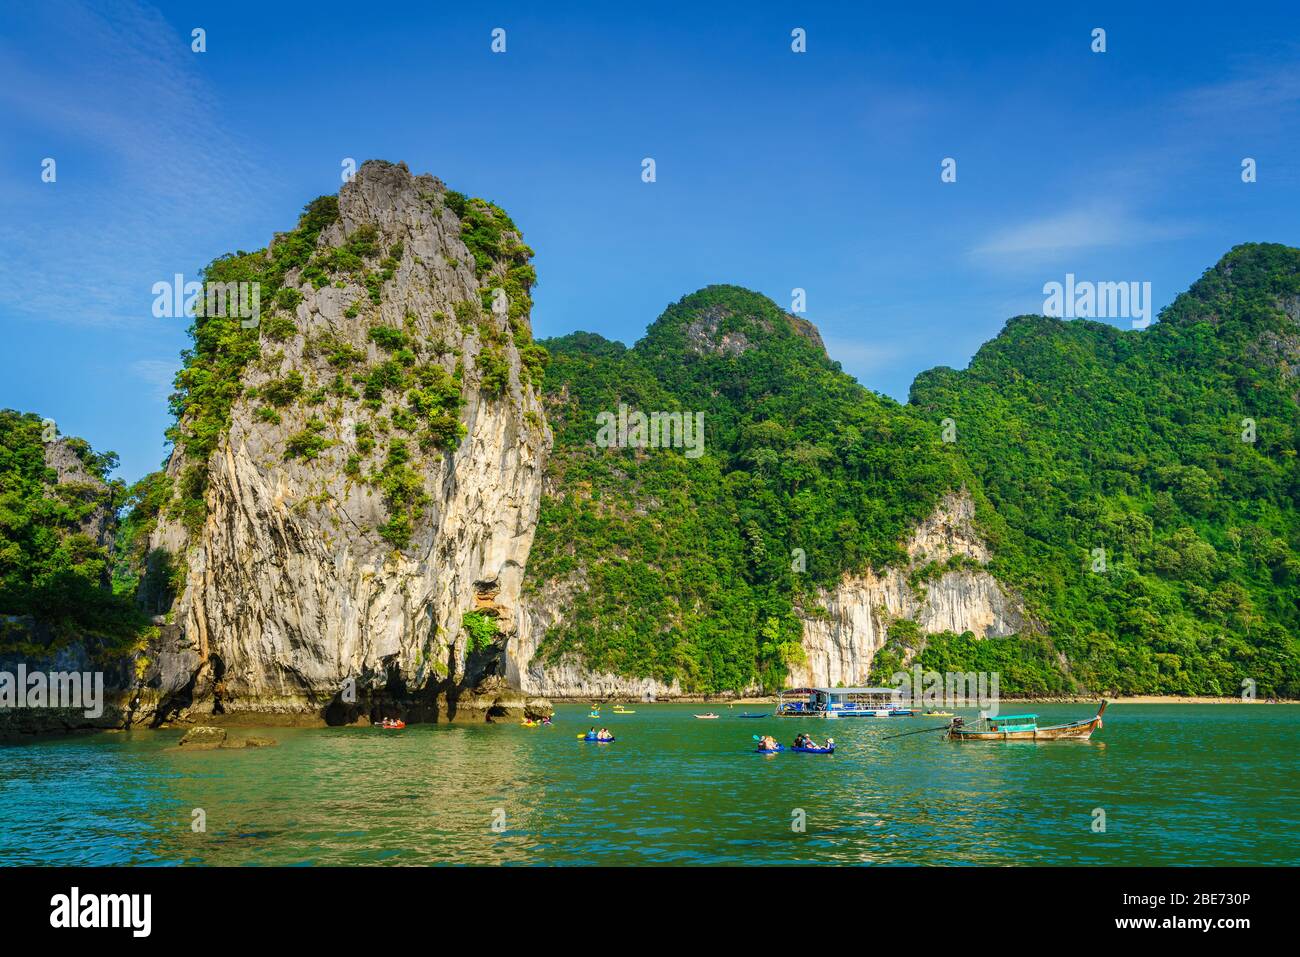 Koh Hong Island, Thailandia, 5 novembre 2017: Tour barche e kayak da Koh Hong Island - una popolare destinazione turistica a Krabi, Thailandia Foto Stock